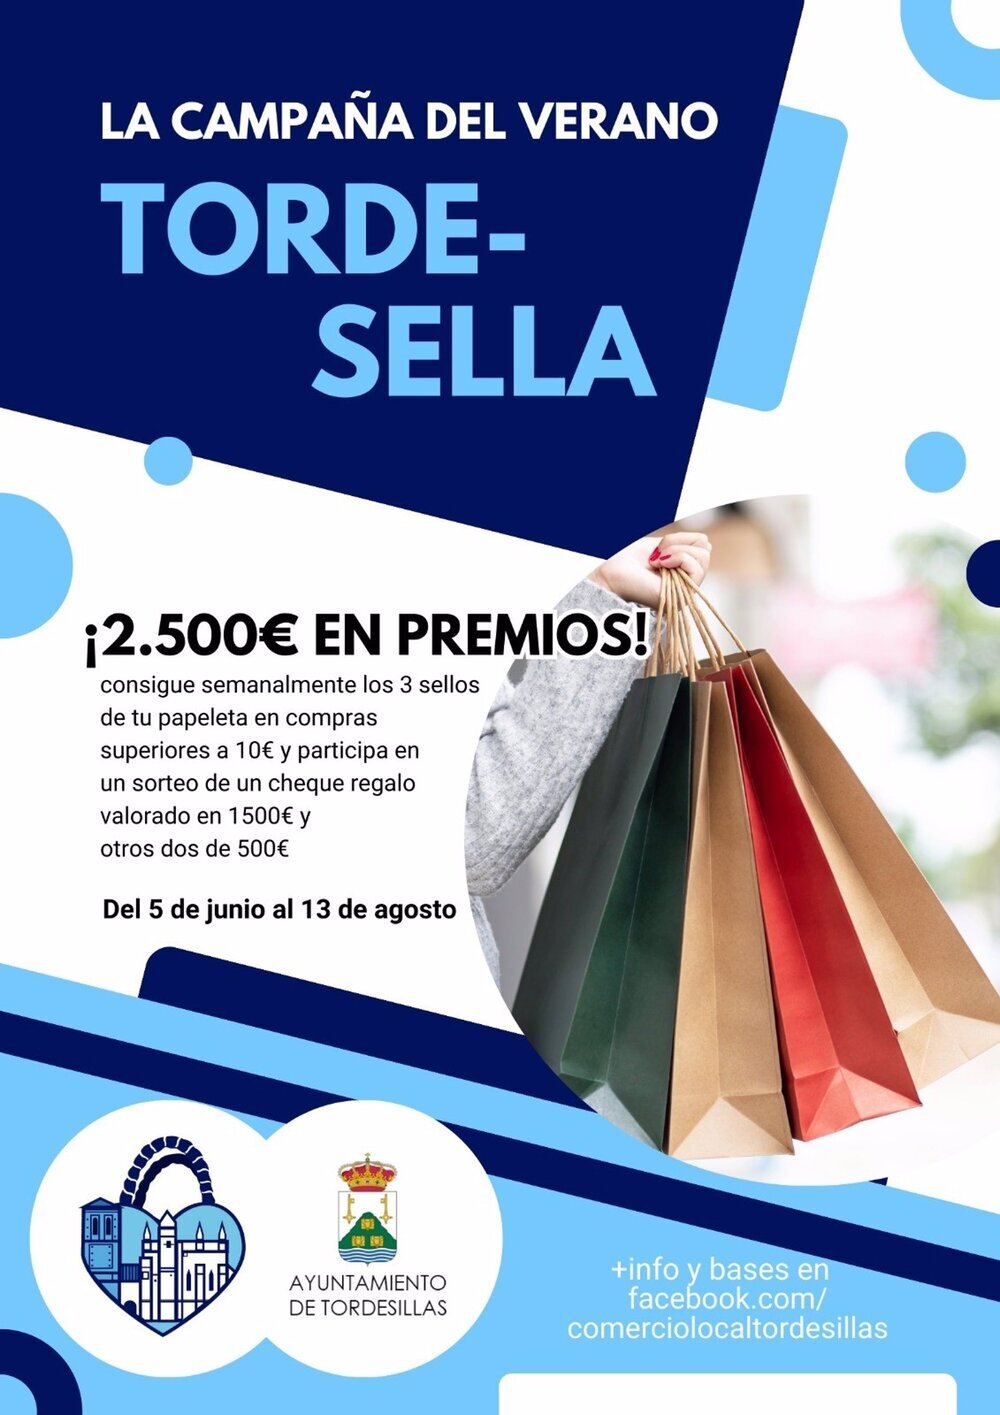 Tordesillas busca fomentar el comercio local durante el verano con la campaña 'Torde-Sella'.